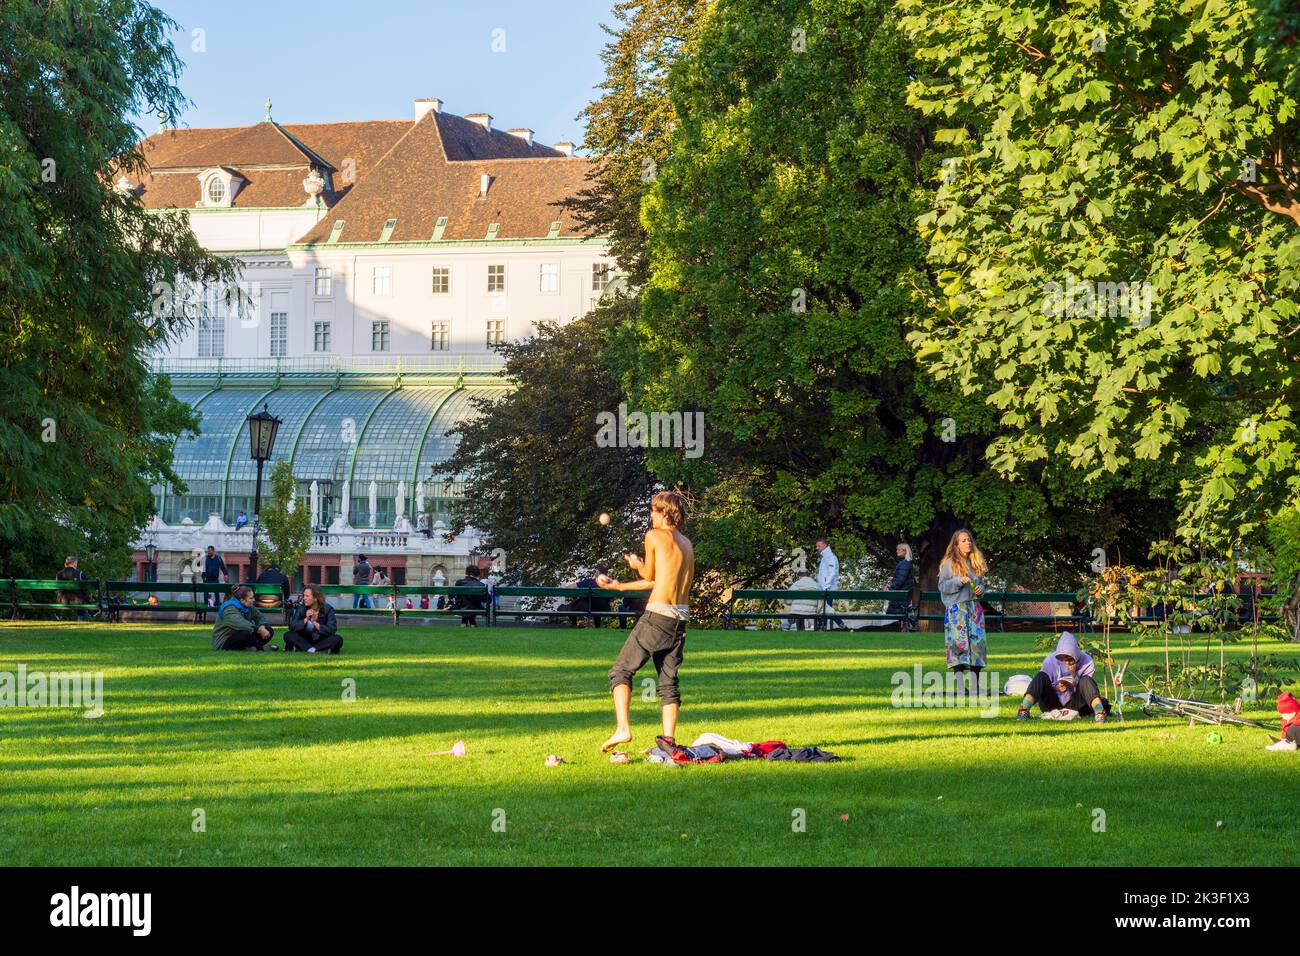 Wien, Vienne: parc Burggarten, maison Palmenhaus, jongleur, gens sur la prairie en 01. Vieille ville, Vienne, Autriche Banque D'Images